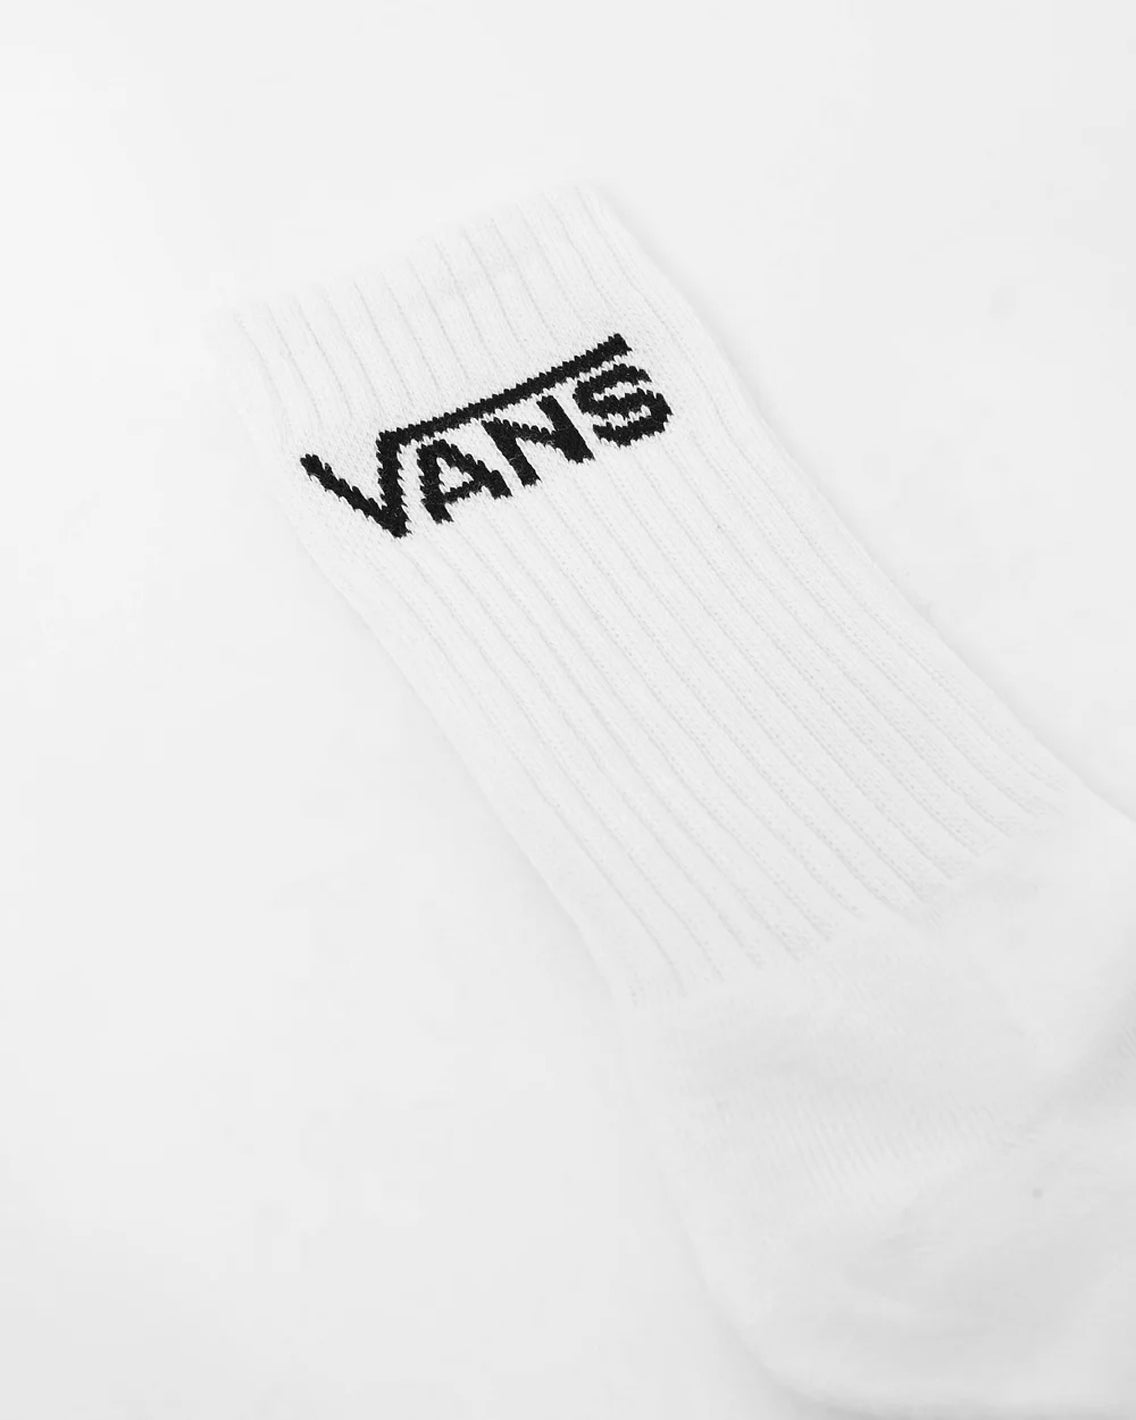 Vans - Classic Crew Socks 3 Pack - White